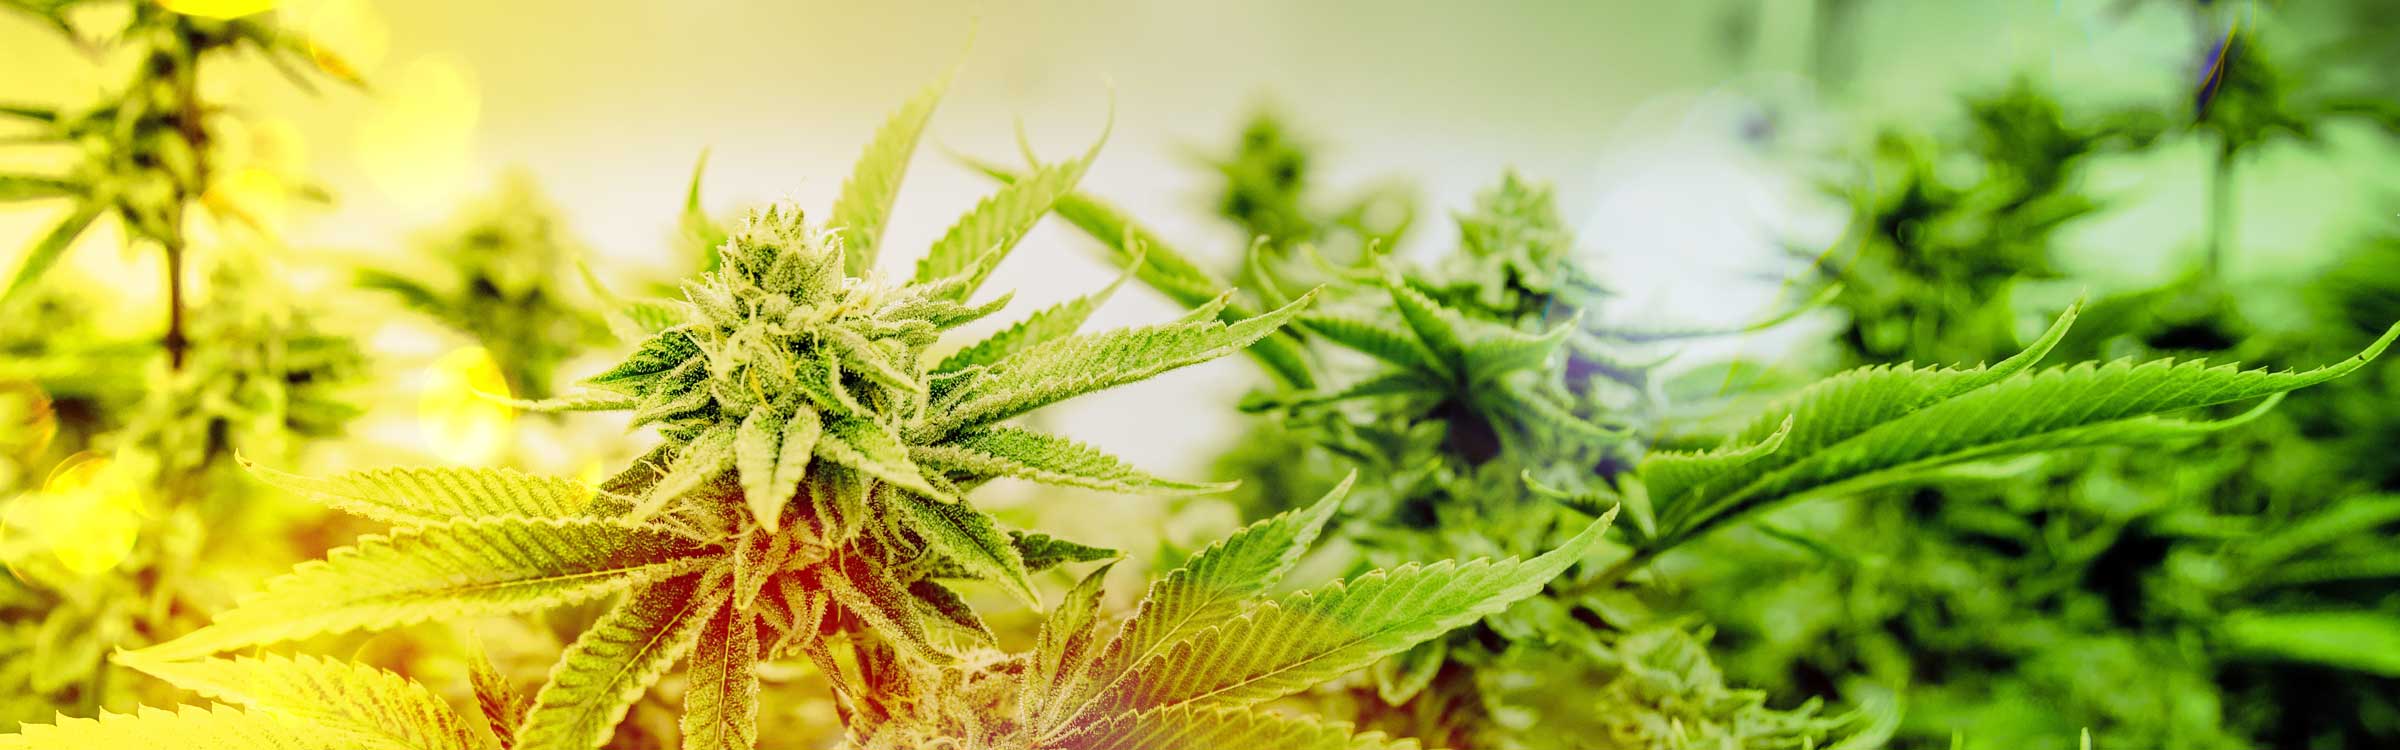 marijuana plants in grow facility